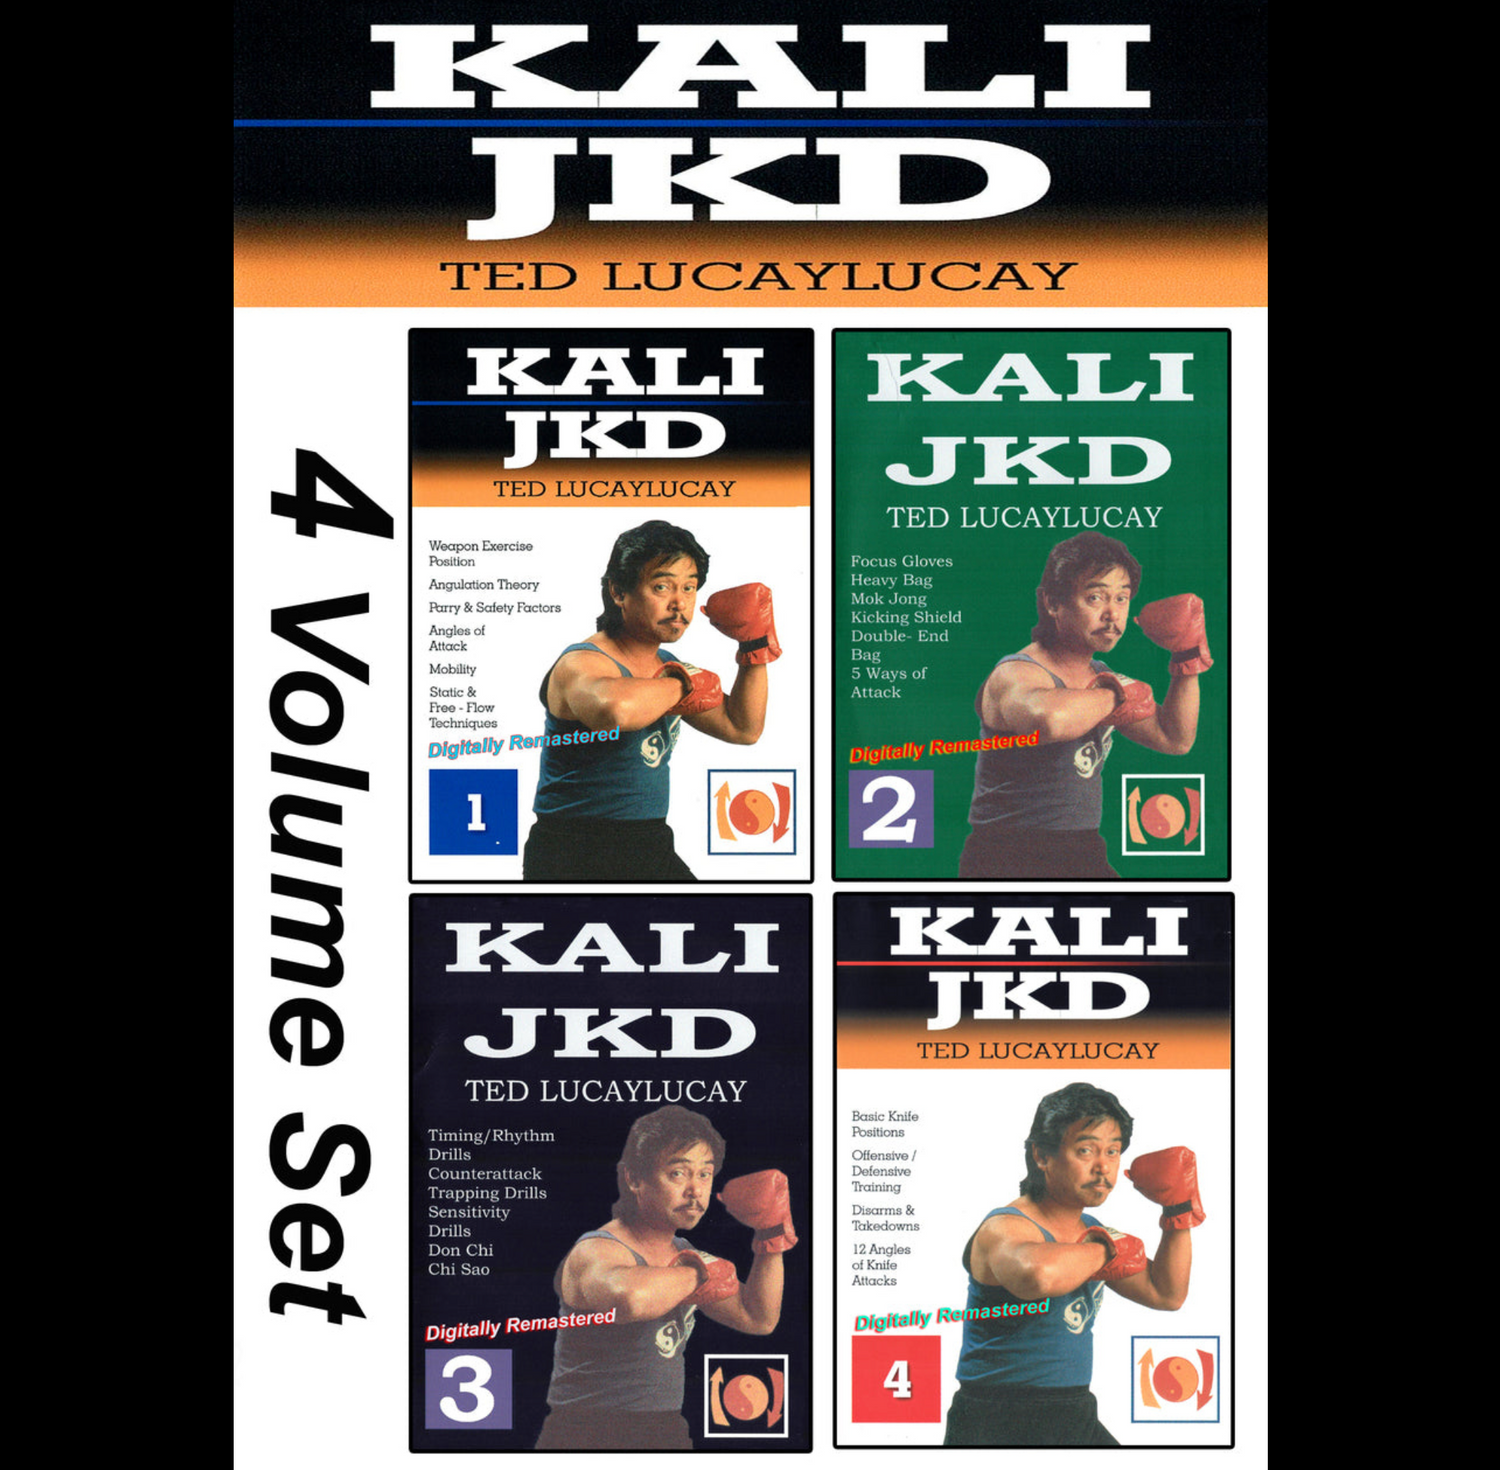 Curso Kali JKD 4 Vol por Ted Lucaylucay (bajo demanda)